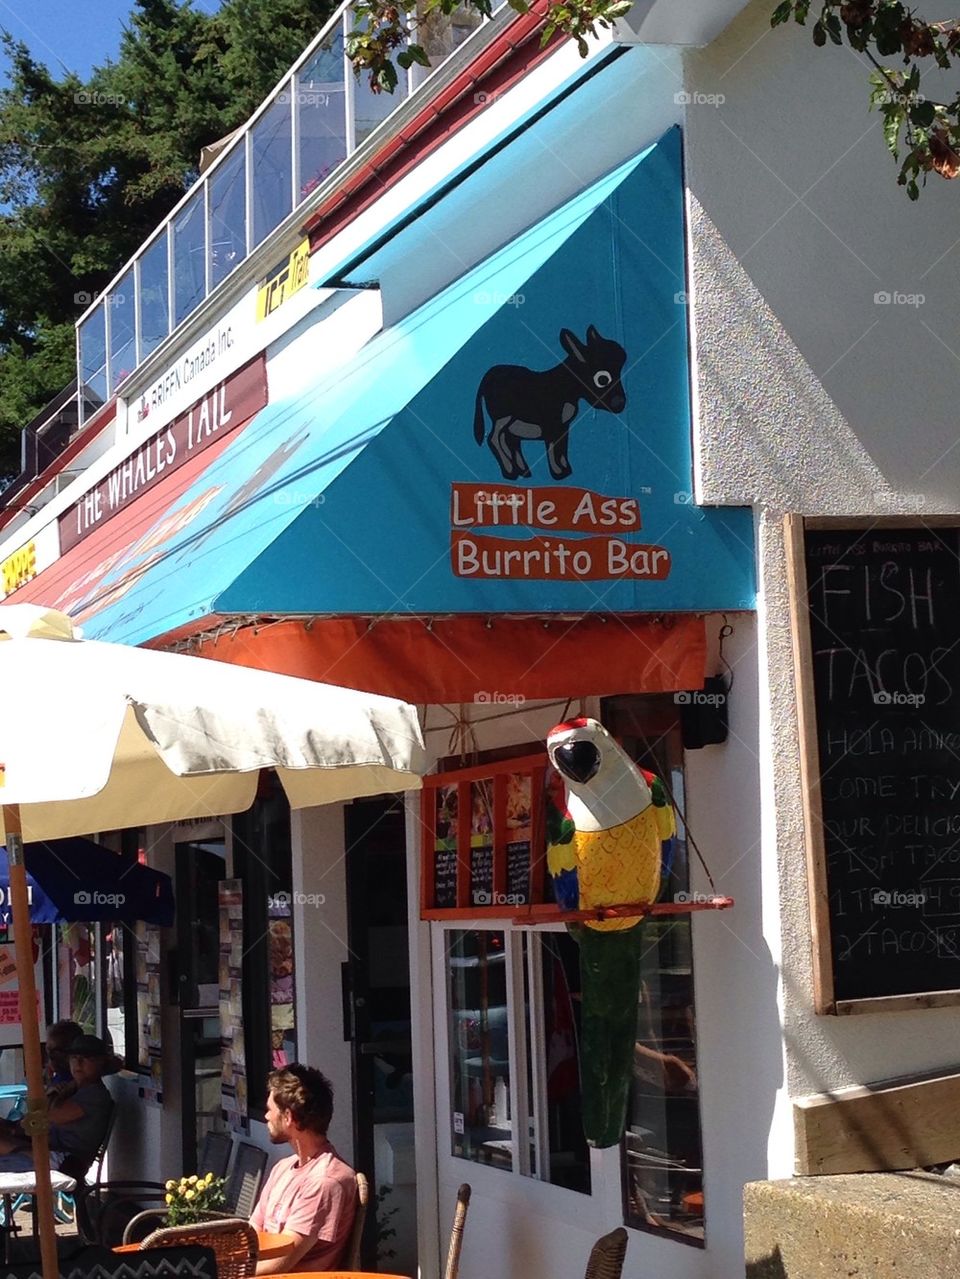 Little ass burrito bar